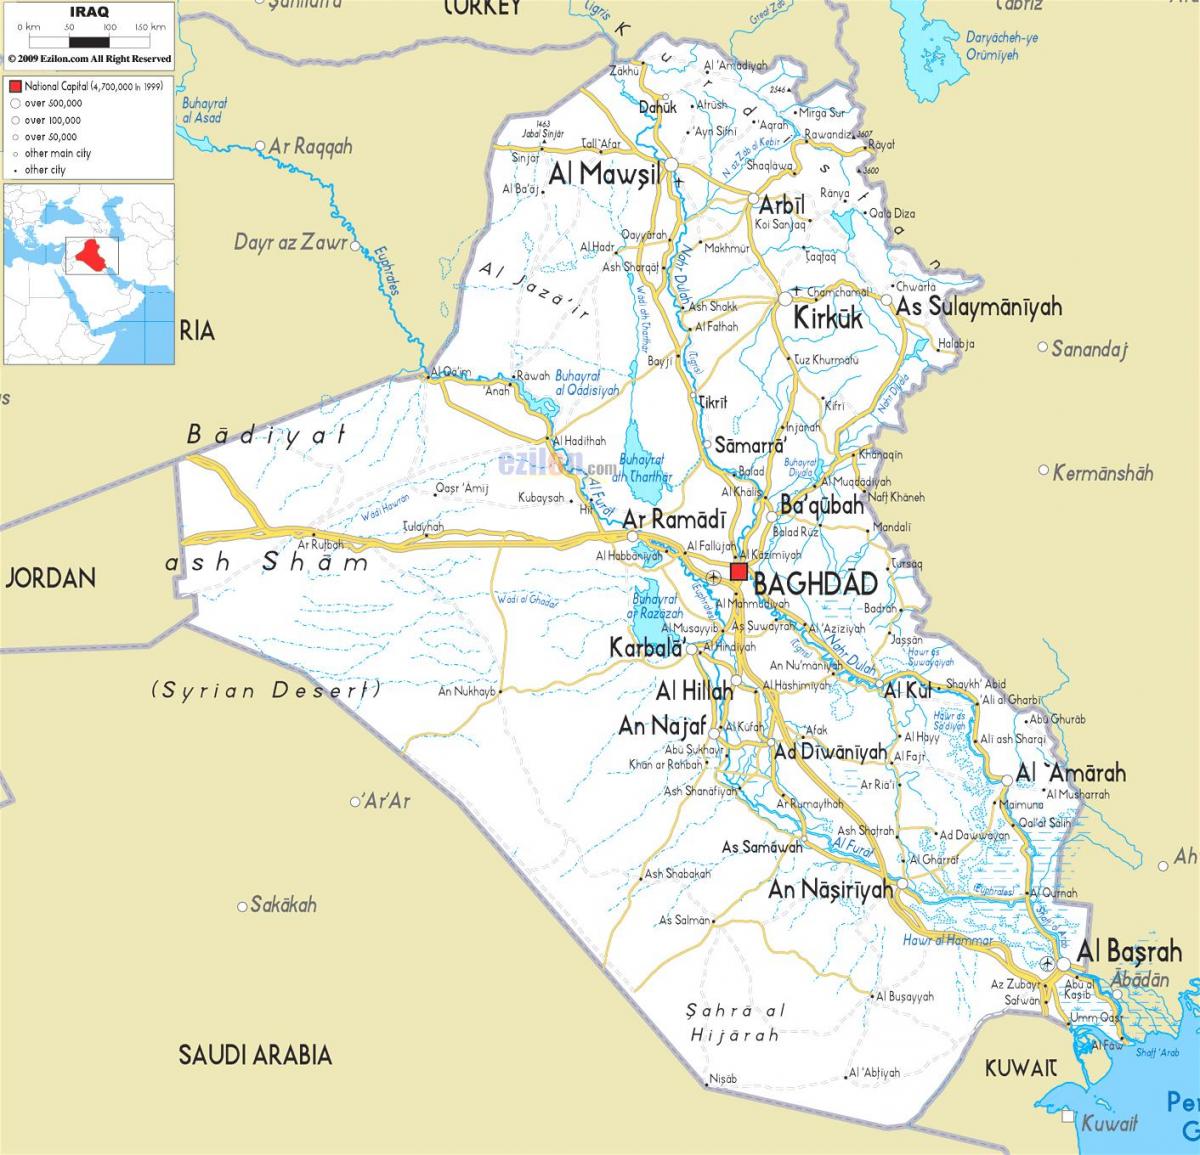 Mapa de l'Iraq riu